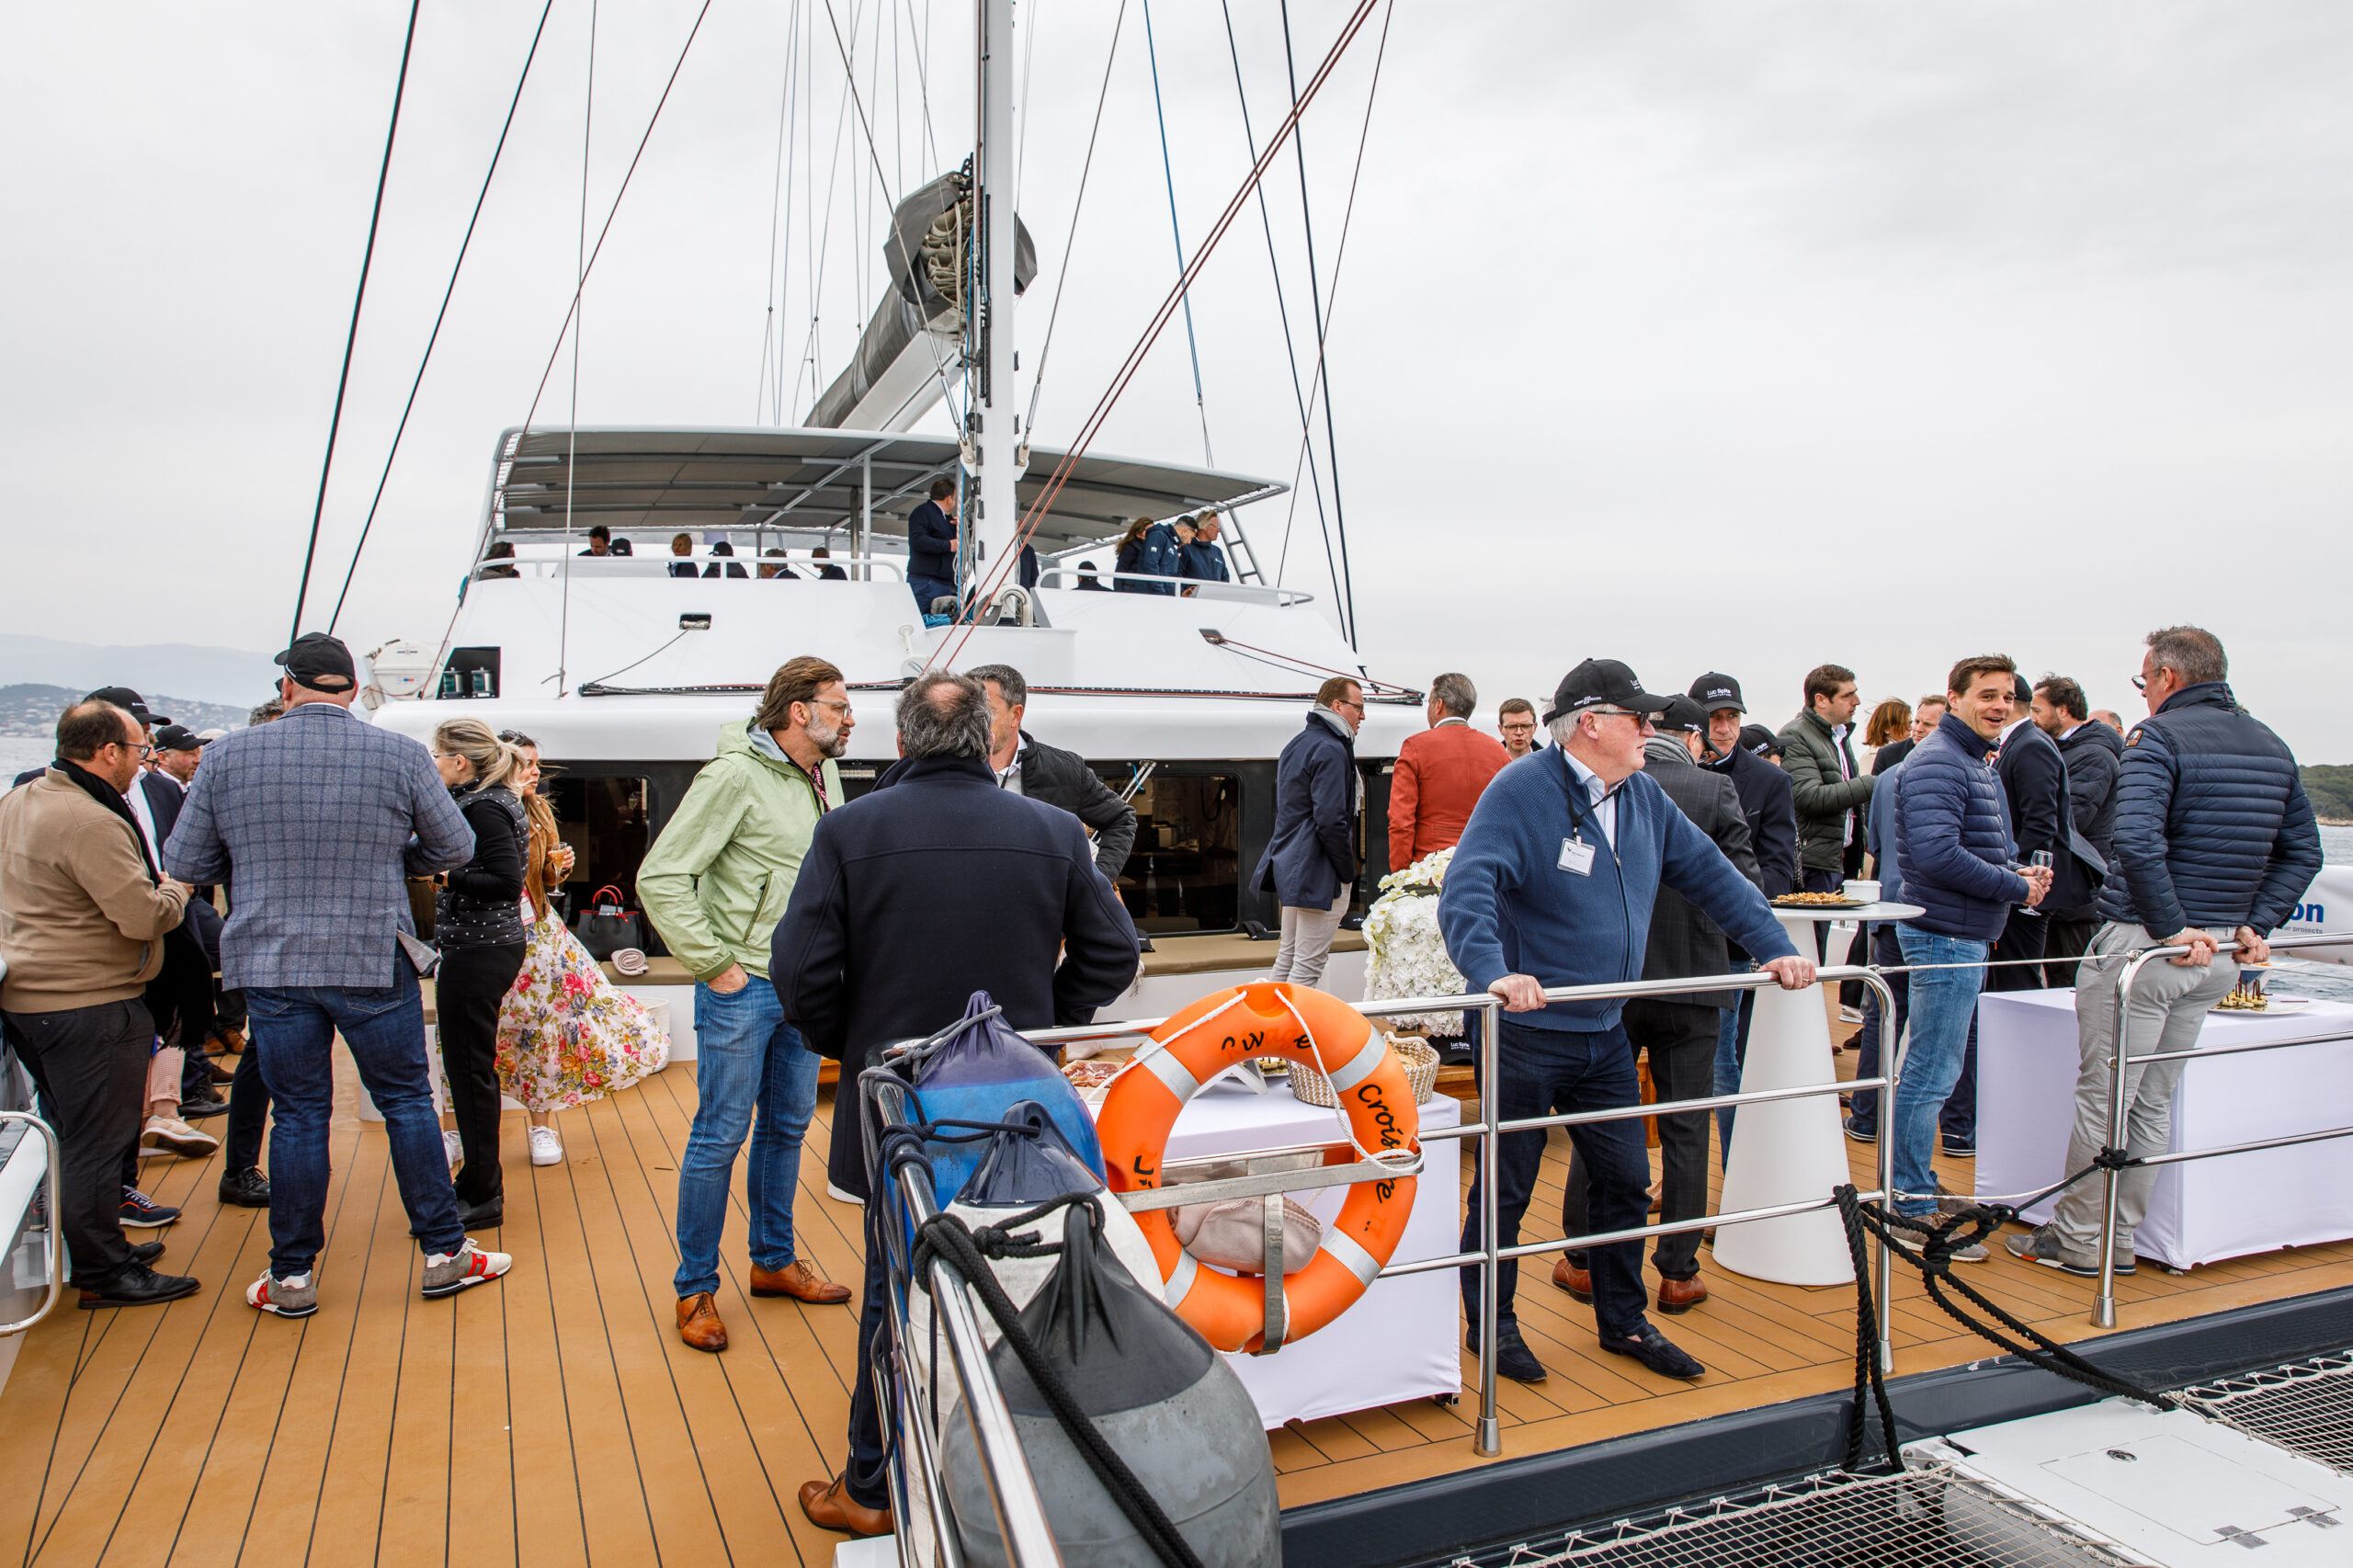 évènement corporate MIPIM sur un catamaran au vieux port de Cannes